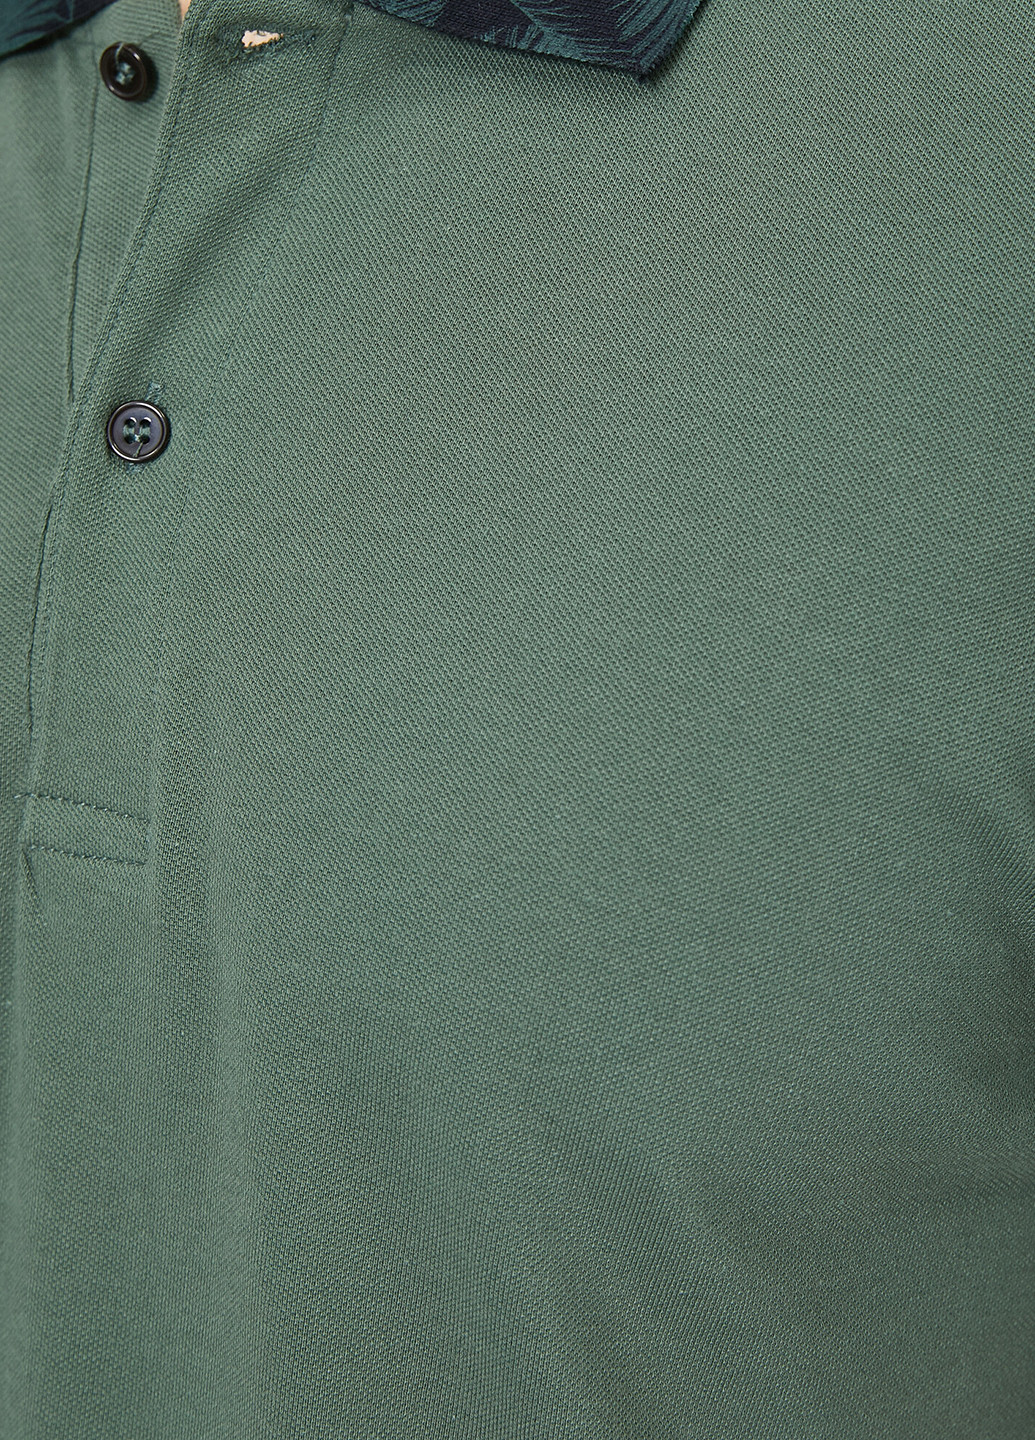 Серо-зеленая футболка-поло для мужчин KOTON однотонная